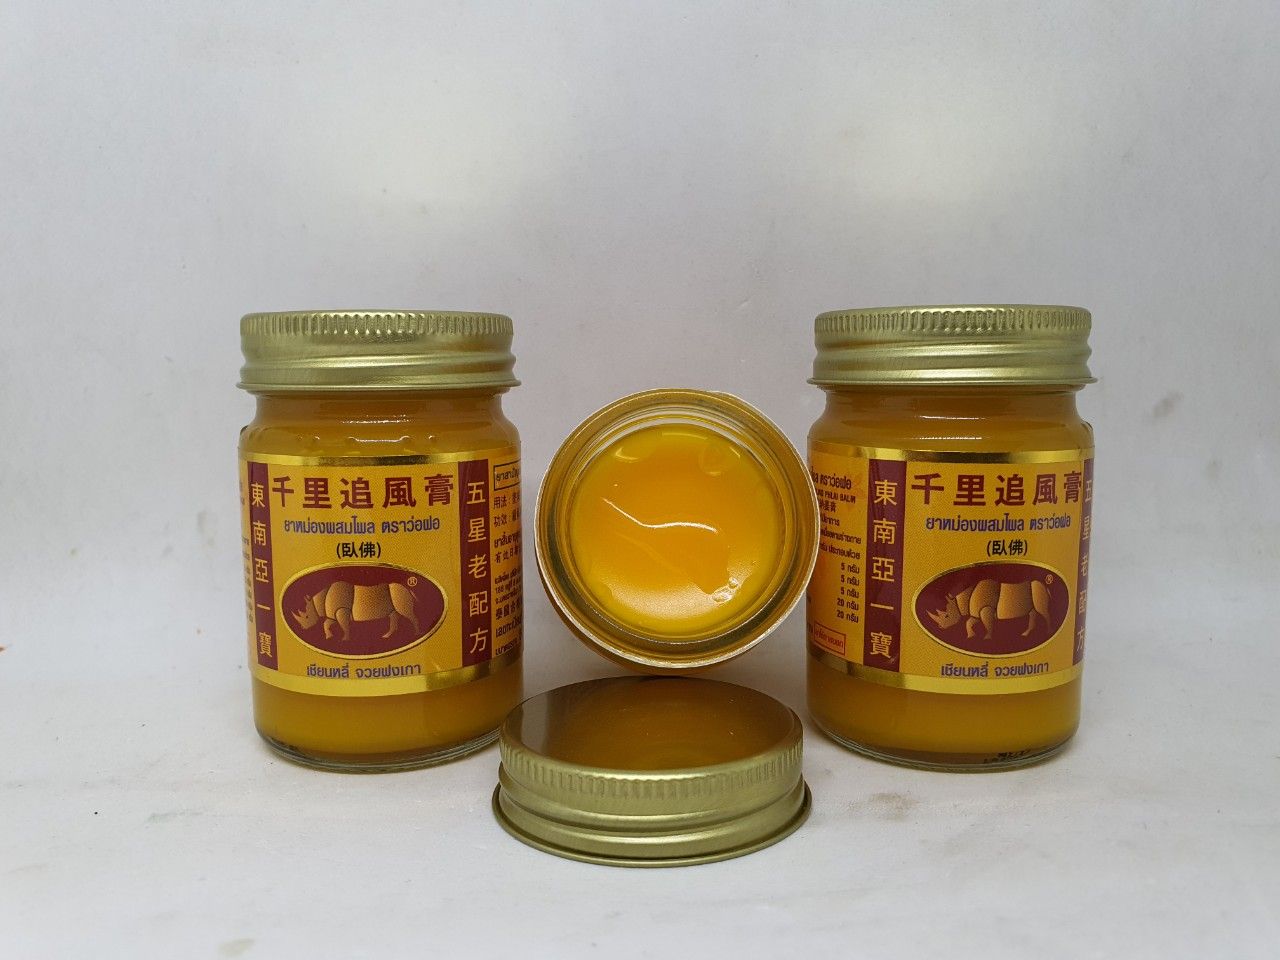  Combo 3 hủ dầu cù là tê giác vàng chiết xuất thảo mộc thai herbal balm 50 gam 